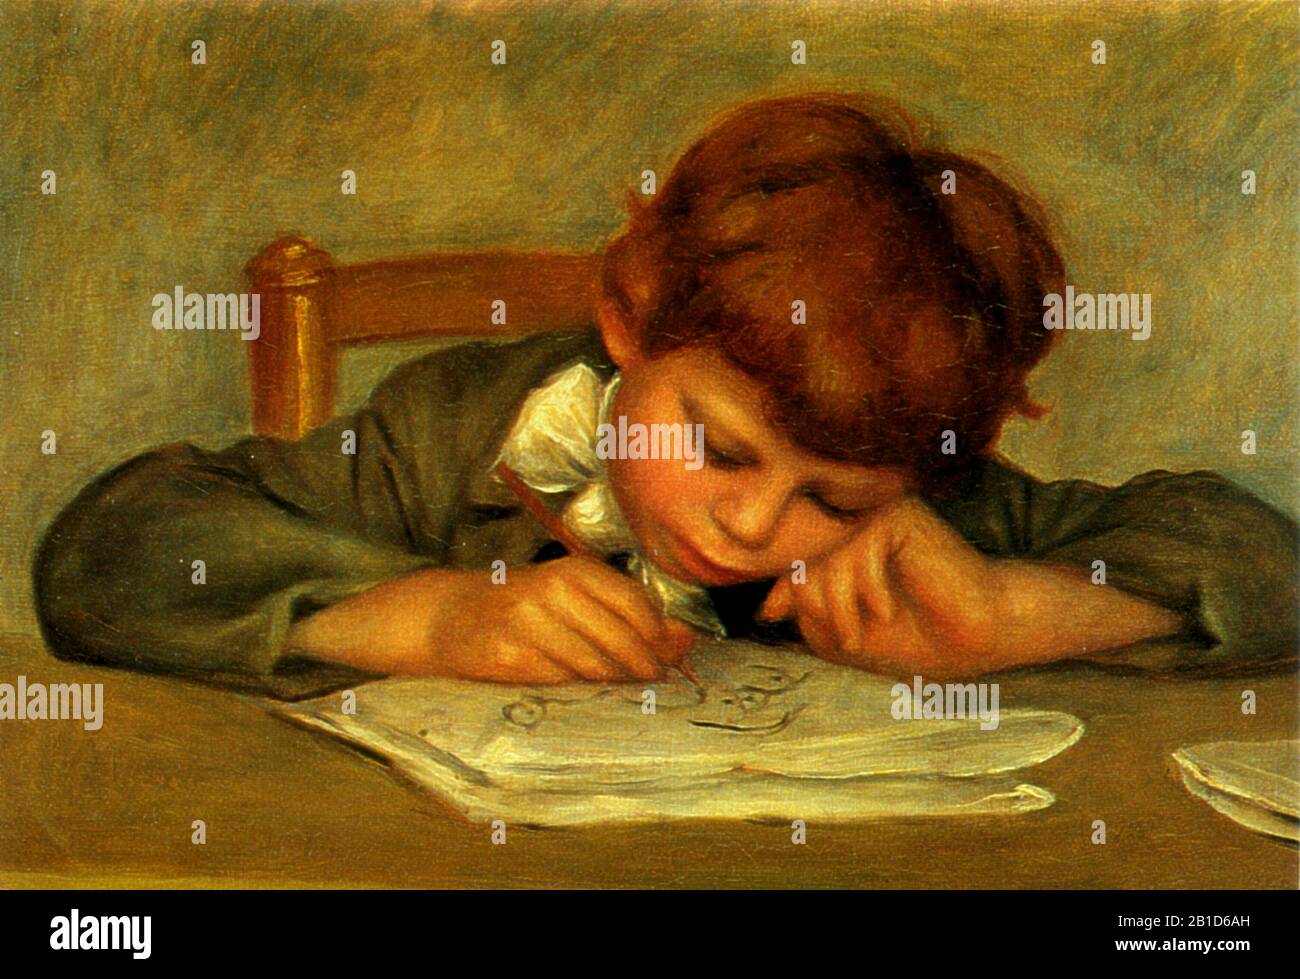 Artist's Son, Jean, Drawing (1901) - Pittura inizio 20th Secolo di Pierre-Auguste Renoir - immagine Ad Altissima risoluzione e qualità Foto Stock